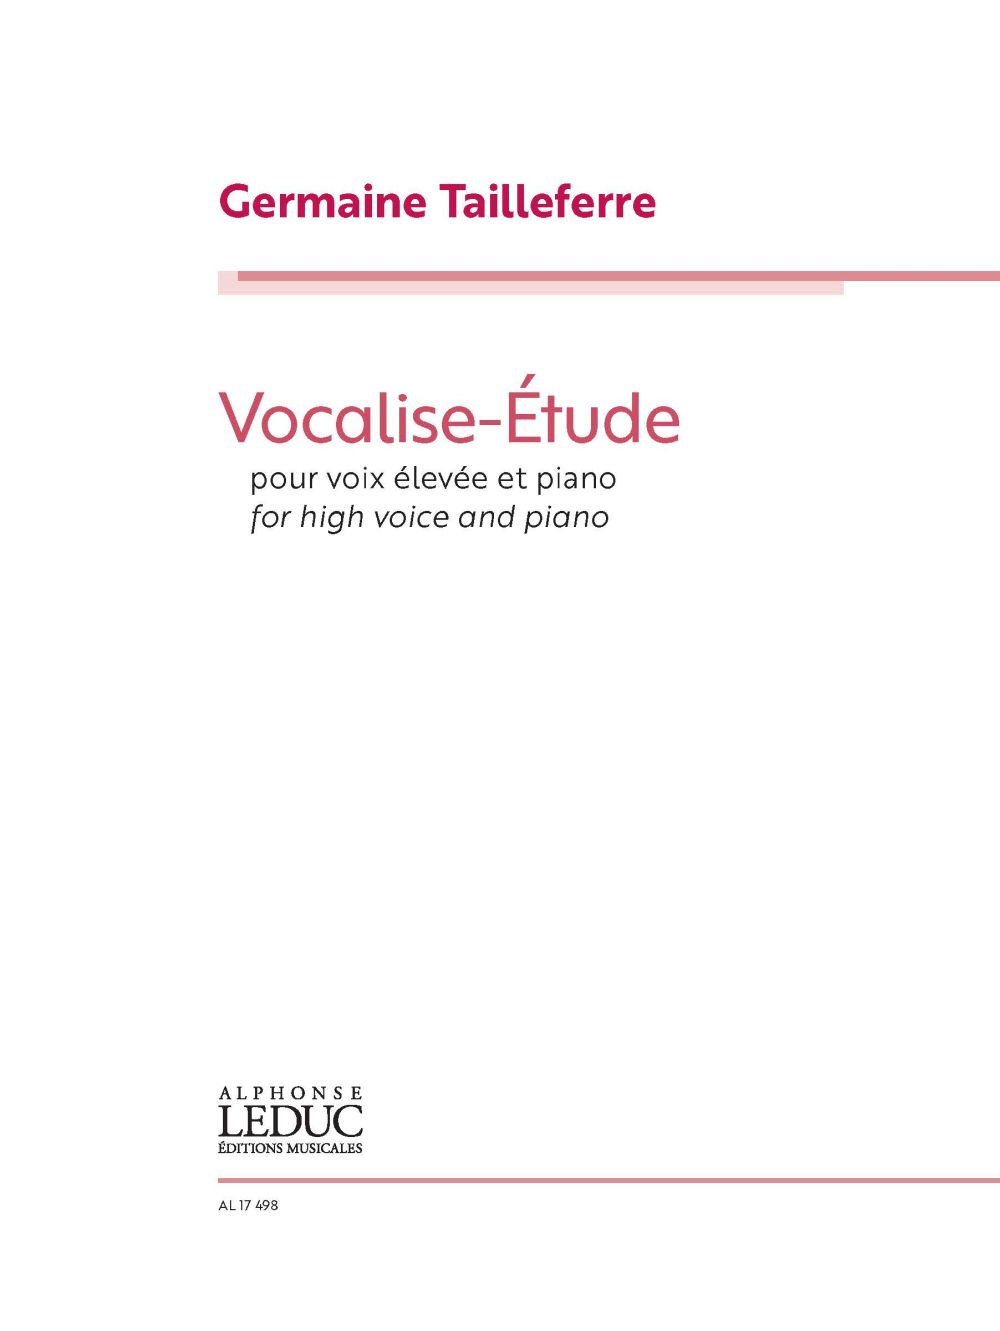 Germaine Tailleferre: Vocalise Etude: Vocal Work